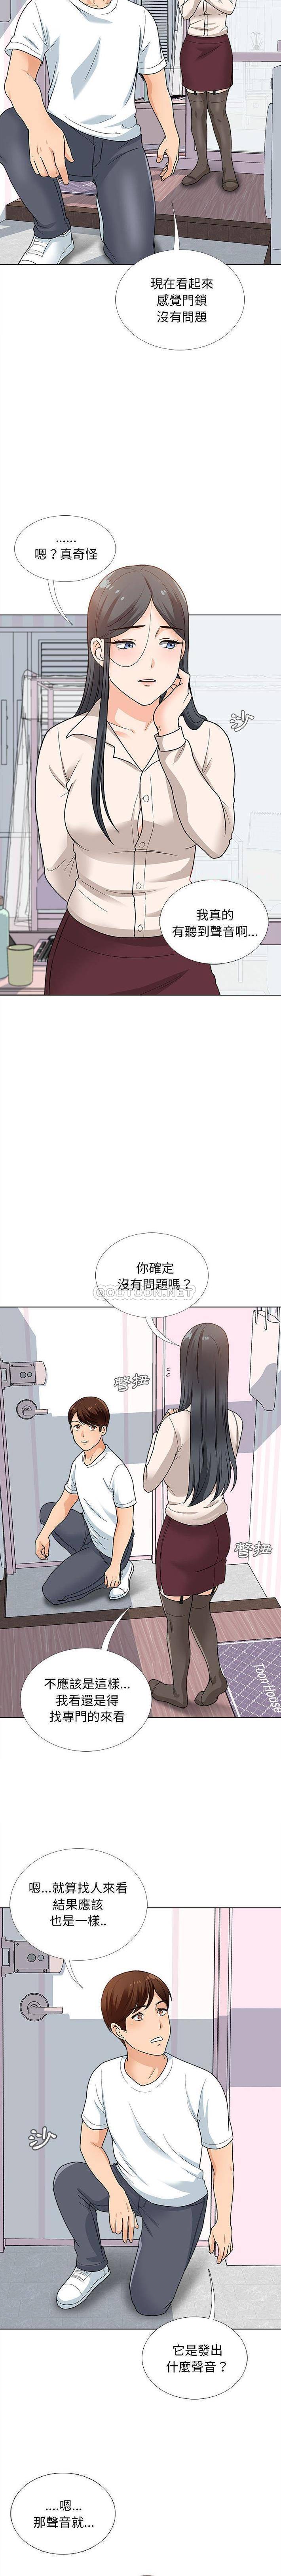 韩国污漫画 幸福公寓 第13话 6